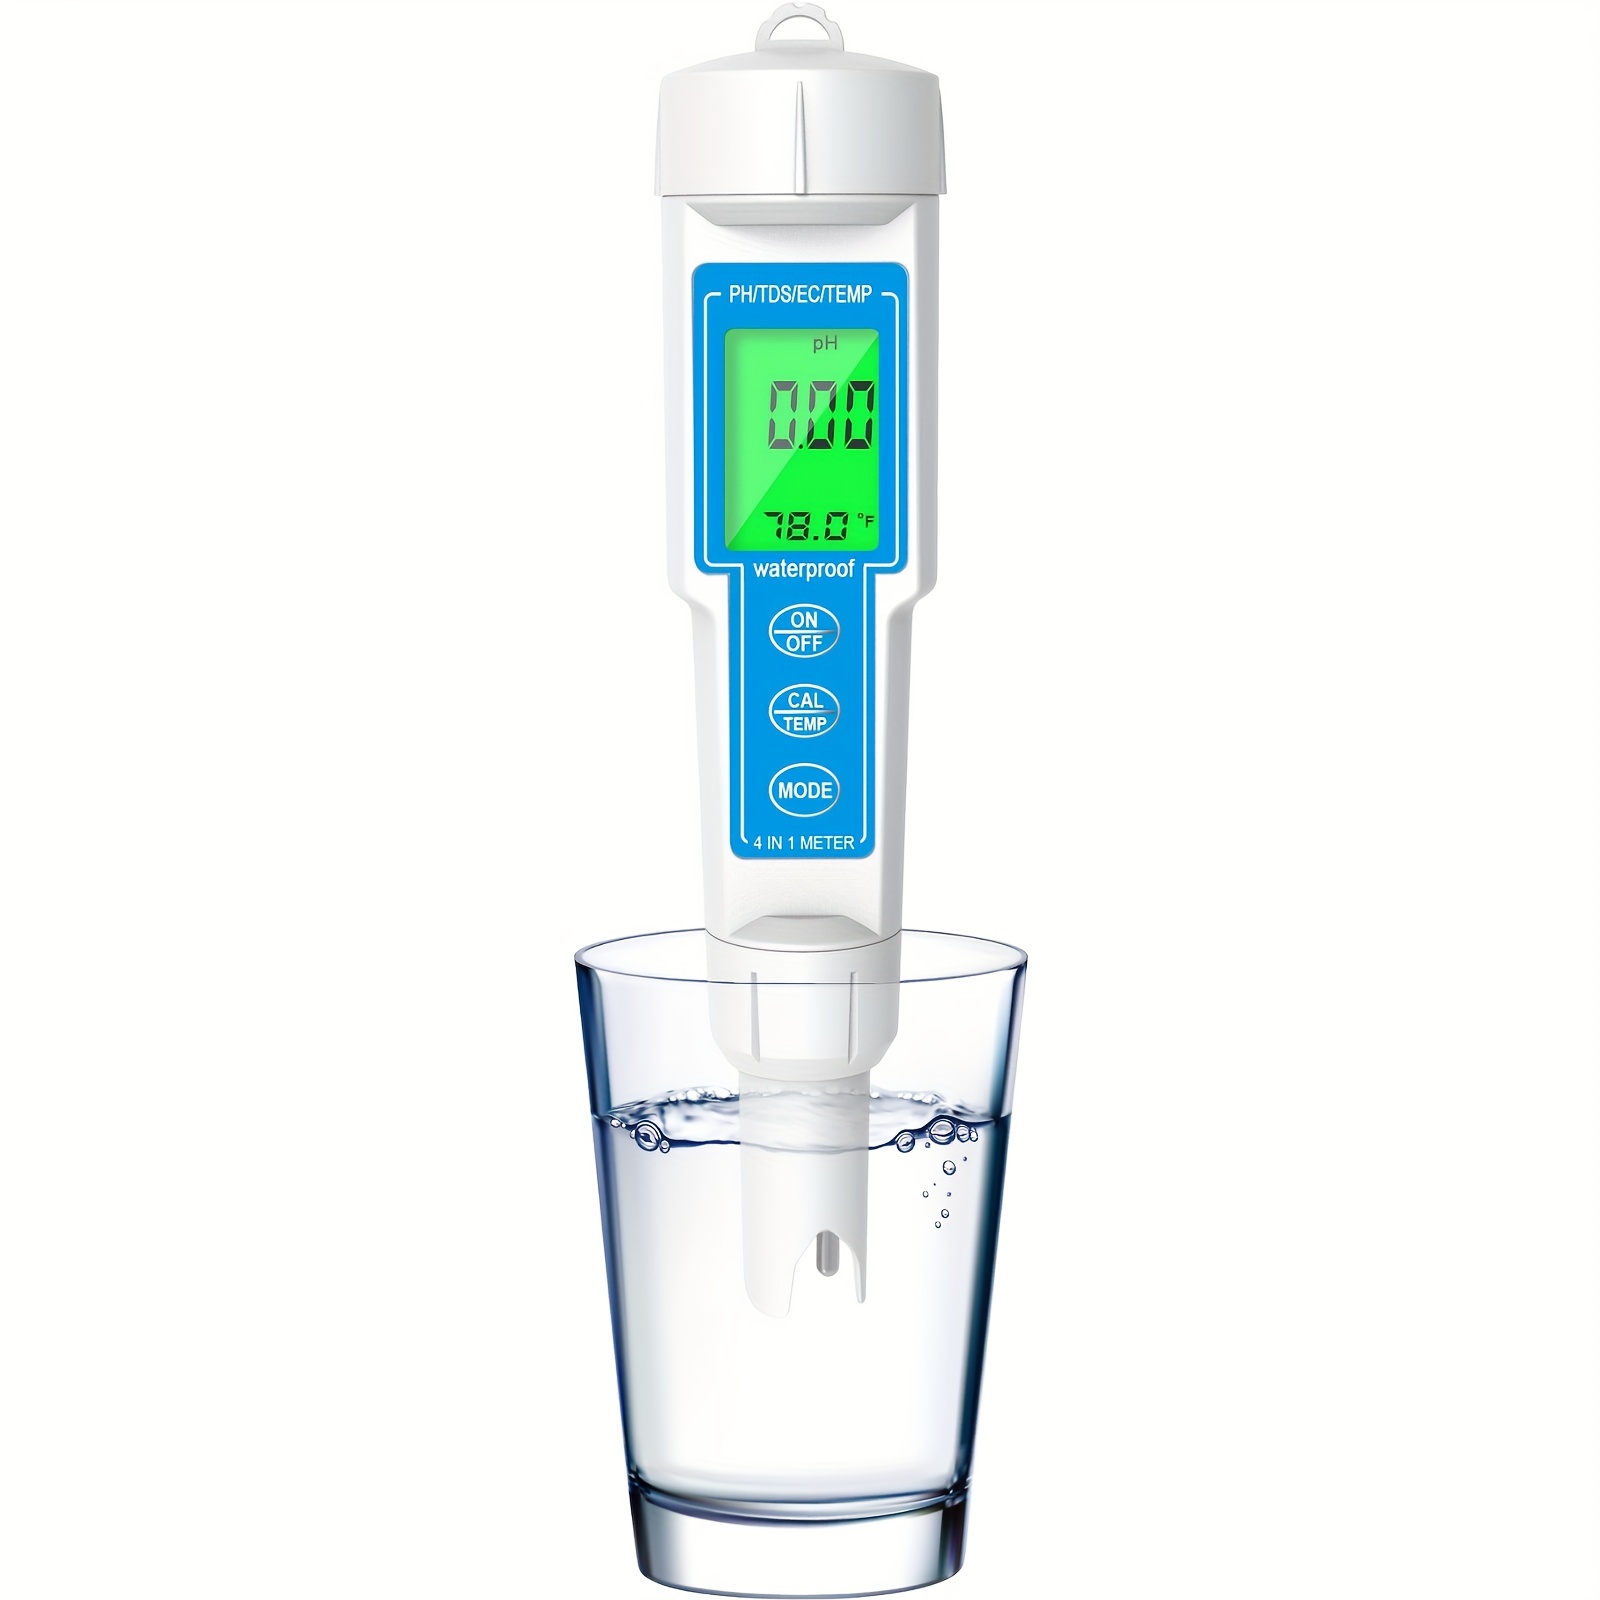 3 En 1 Testeur de pH Ph Mètre Professionnel Tds Ec Mètre Digital Lcd Water  Test Pen Pureté Filtre Eau Quali Blanc